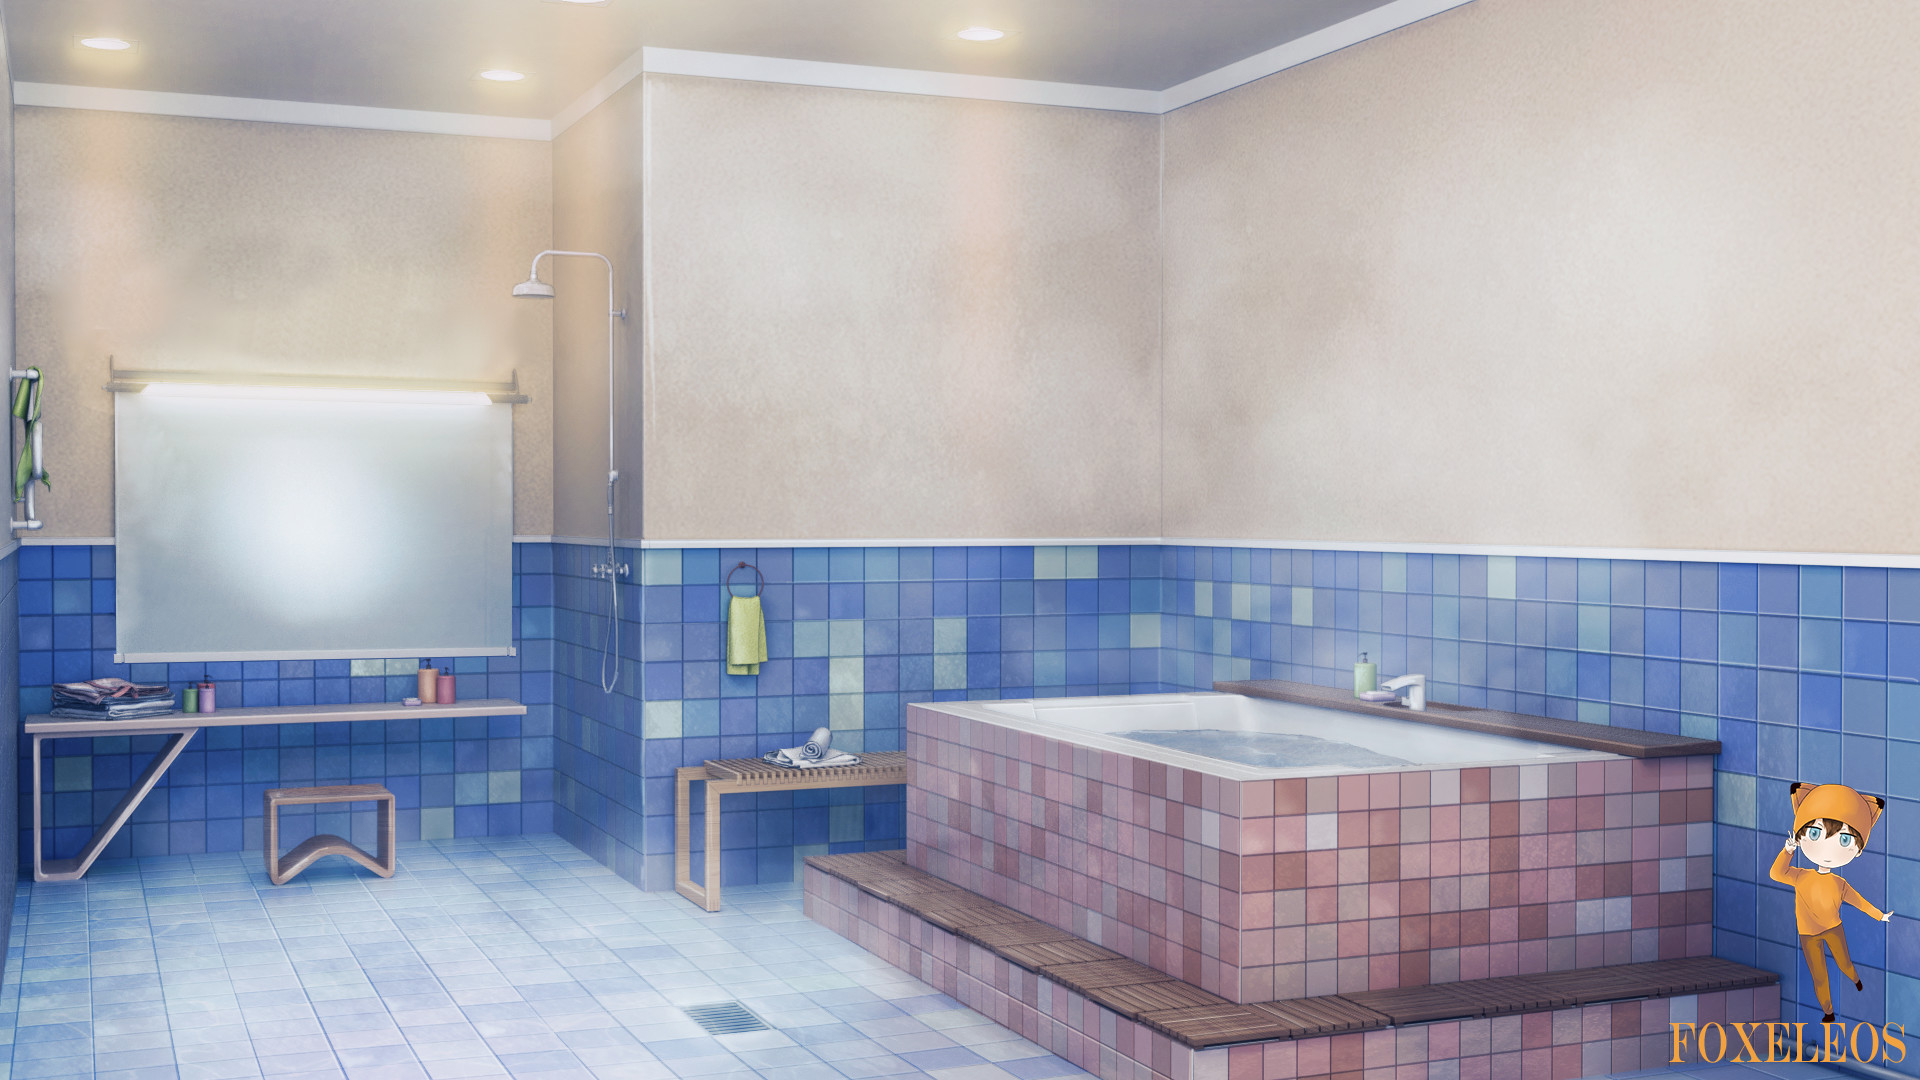 Phông nền phòng tắm anime là một cách tuyệt vời để tạo ra một không gian ấn tượng và sống động cho truyện tương tác của bạn. Hãy xem những ý tưởng phông nền đẹp mắt để làm cho câu chuyện của bạn trở nên hấp dẫn hơn.